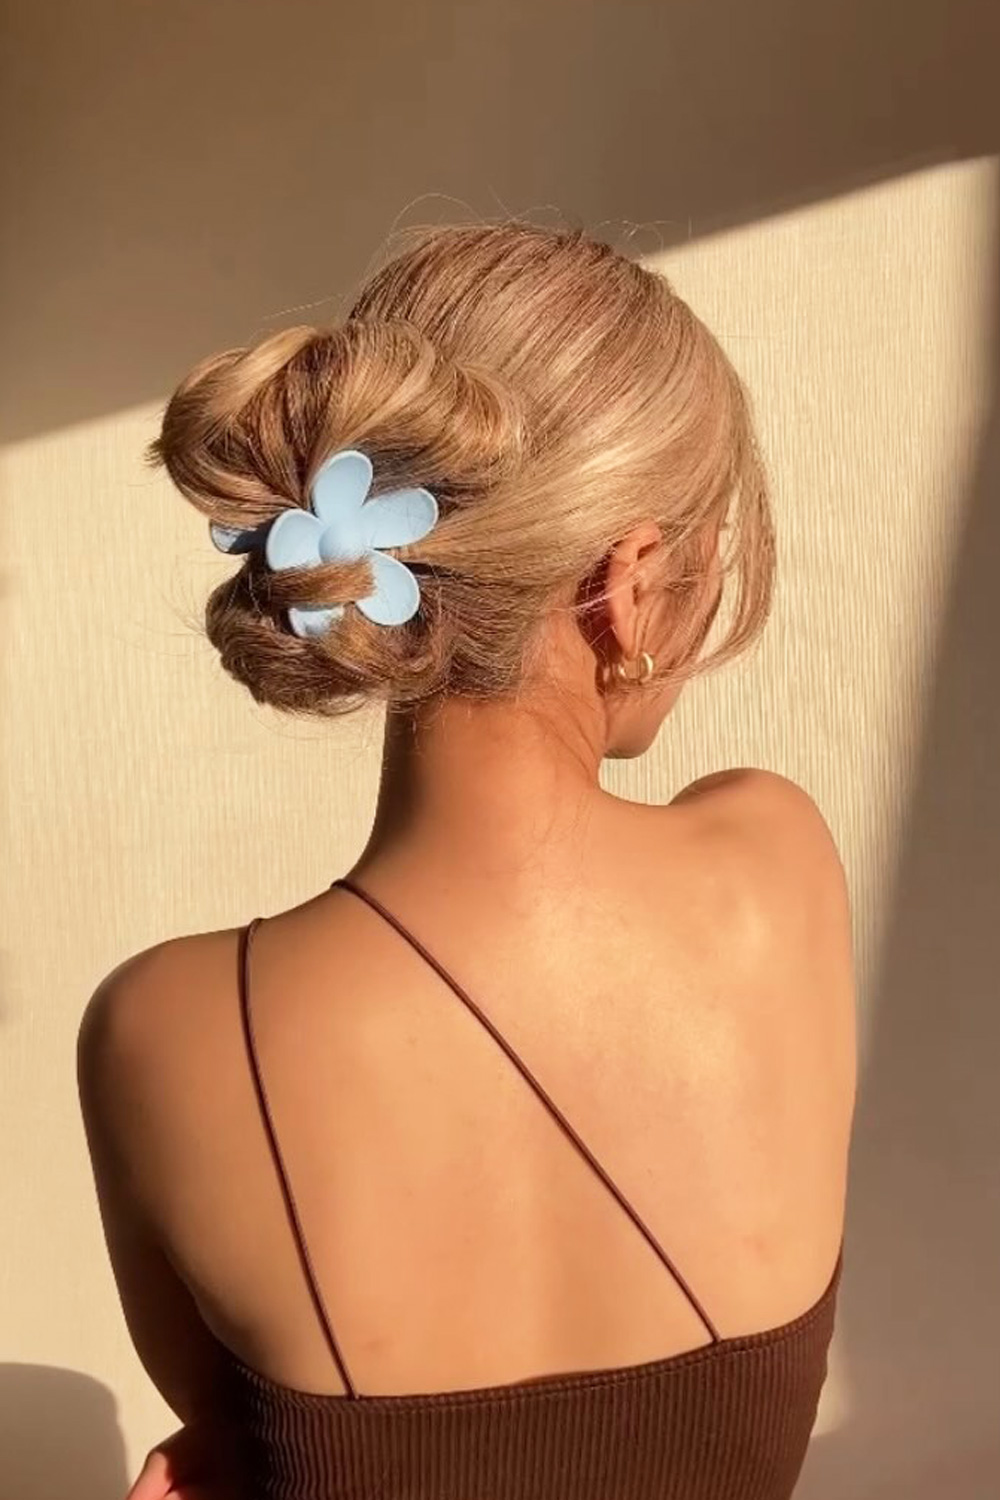 Pinzas para el pelo adornada con flores ➽ Compra online